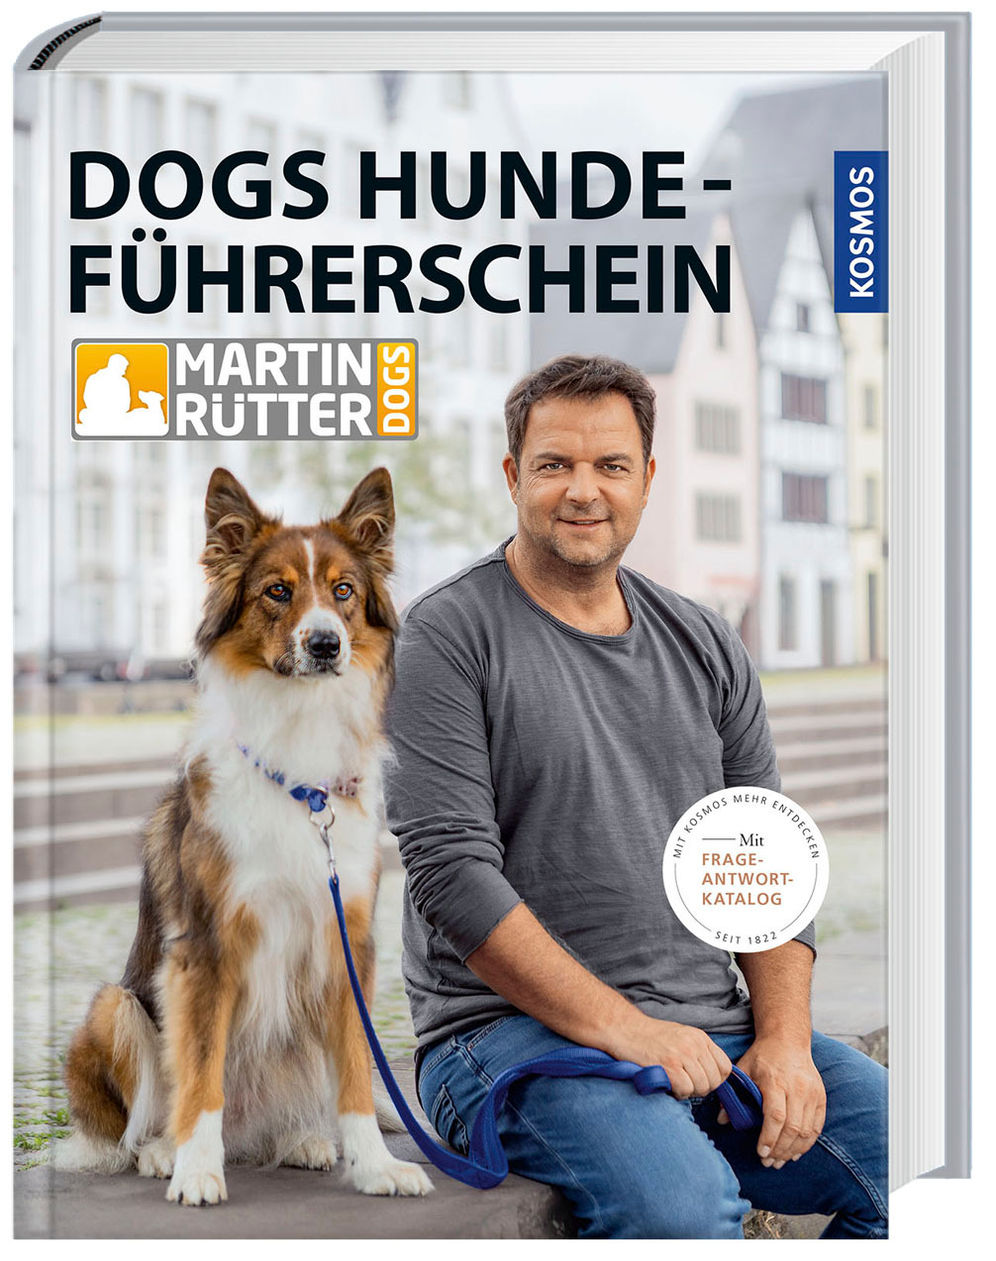 DOGS Hundeführerschein Buch von Martin Rütter versandkostenfrei bestellen